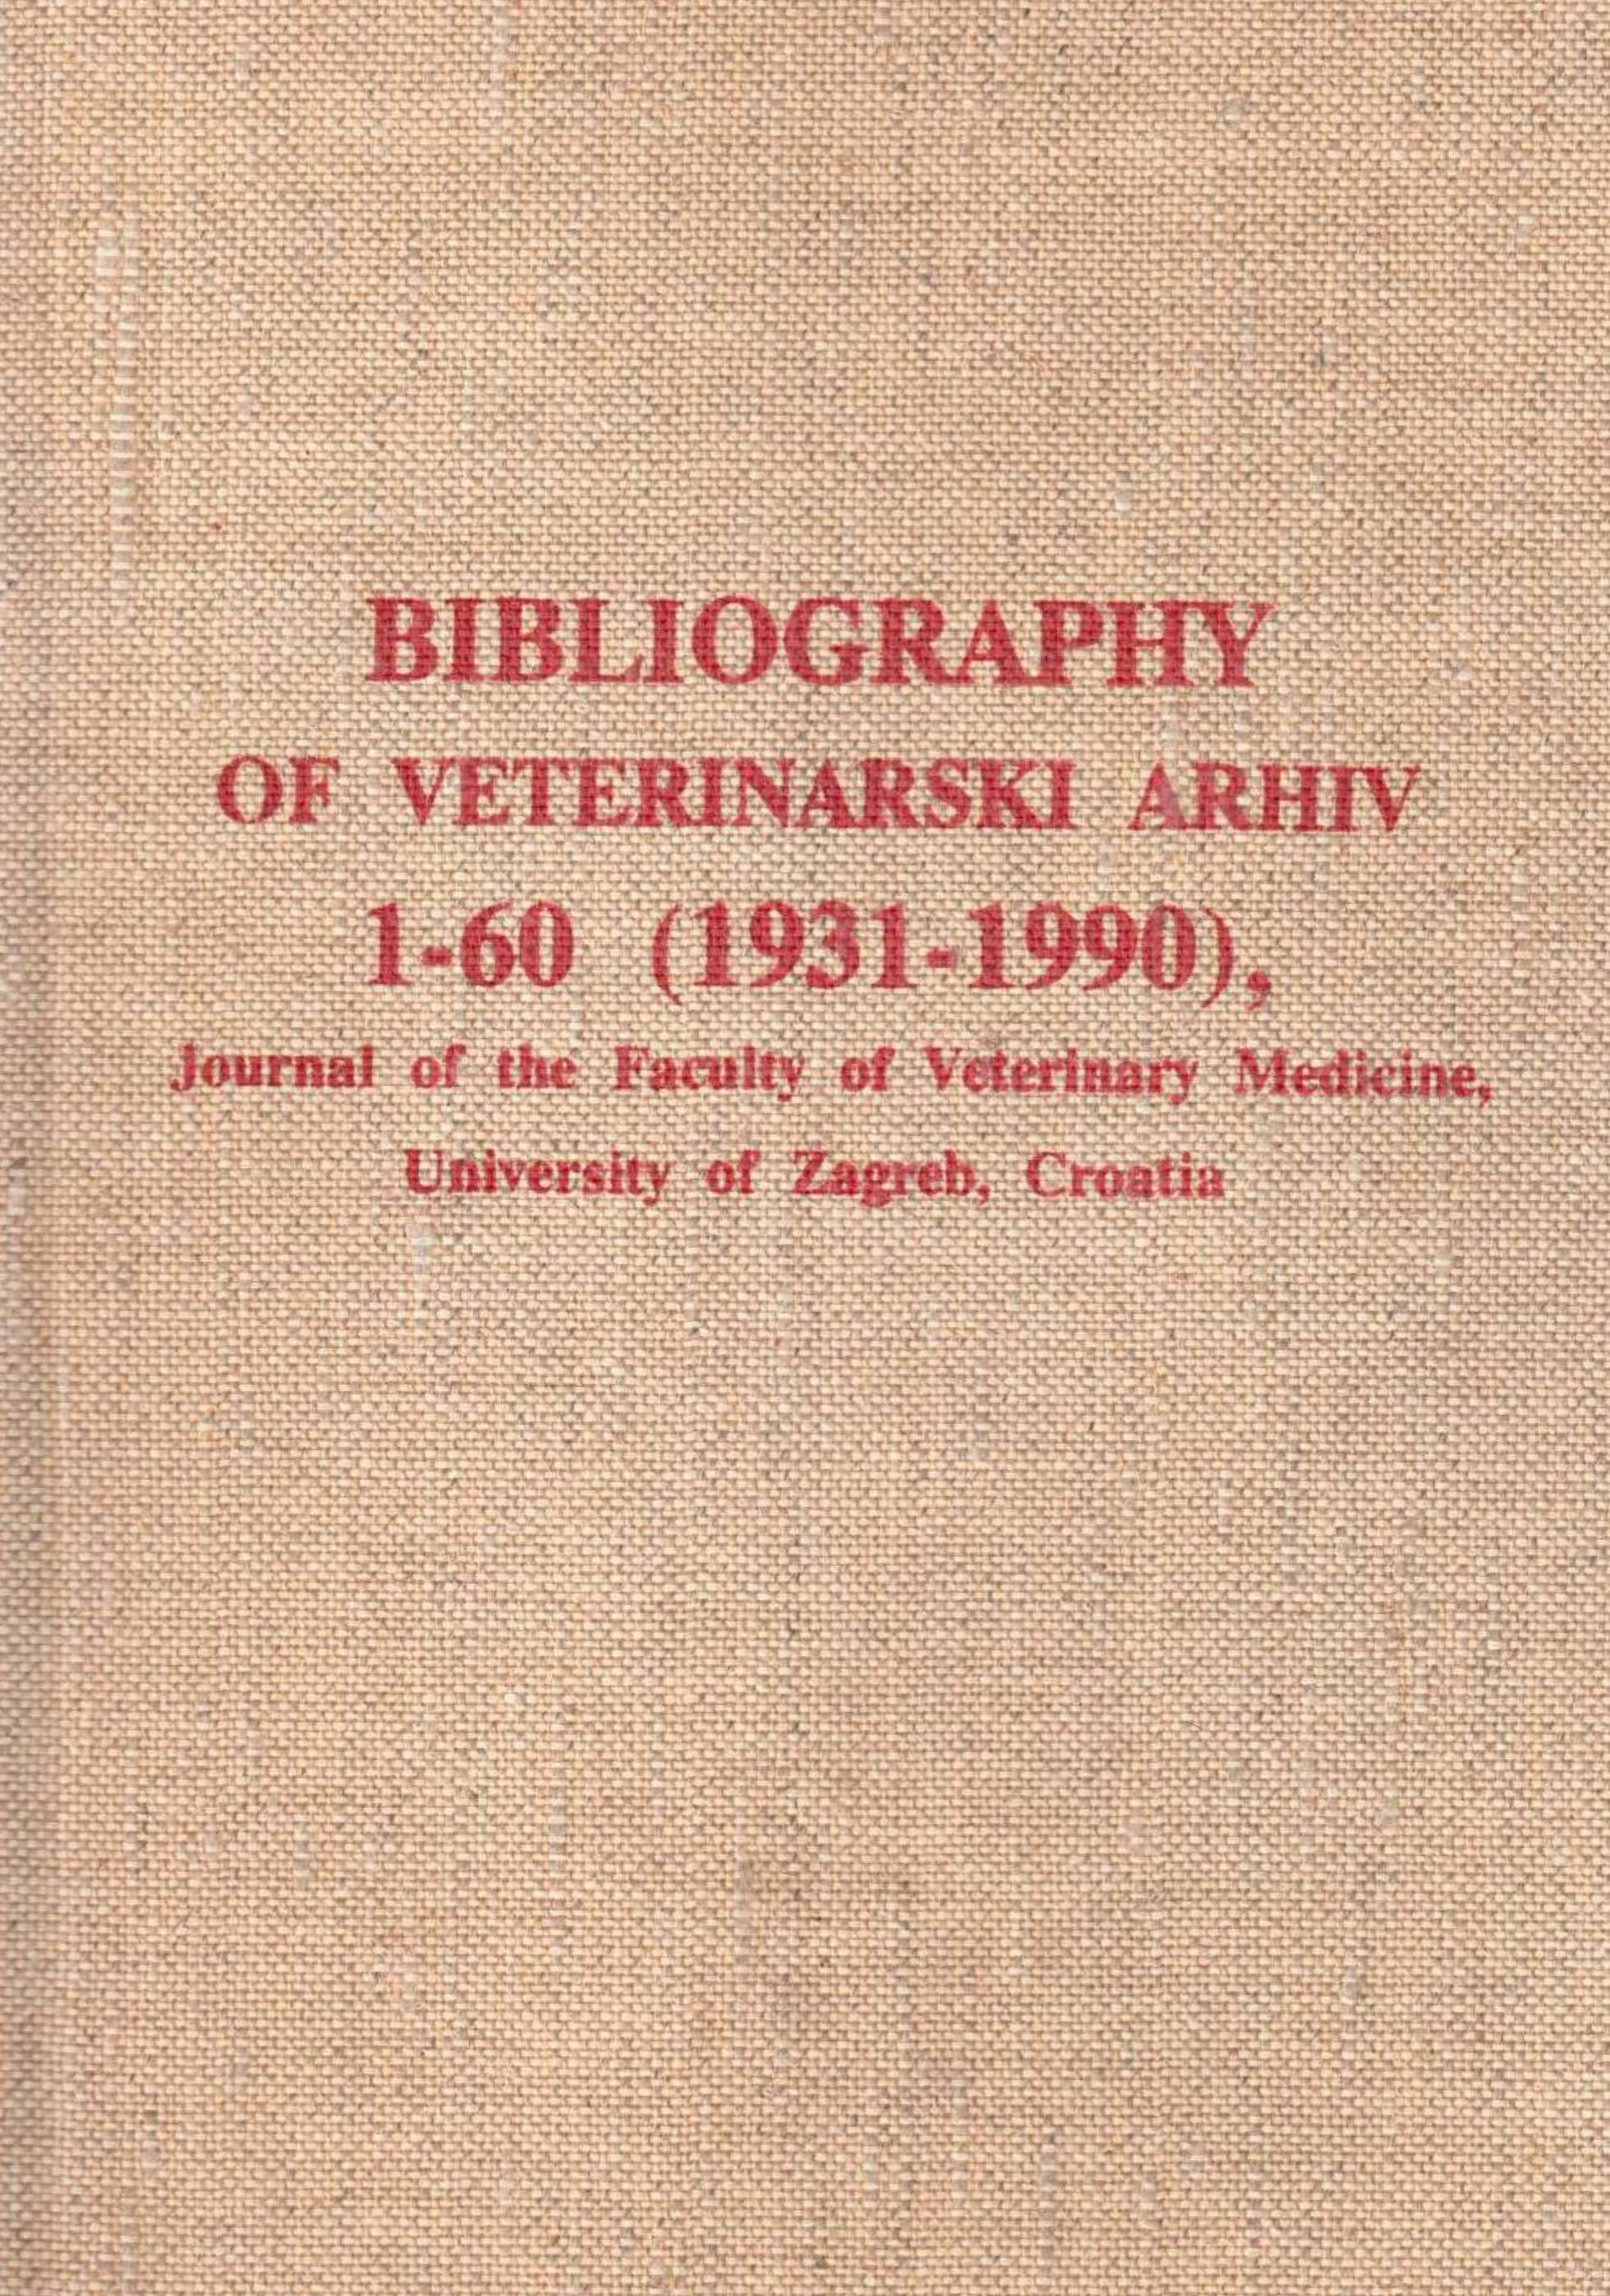 Bibliografija veterinarskog arhiva